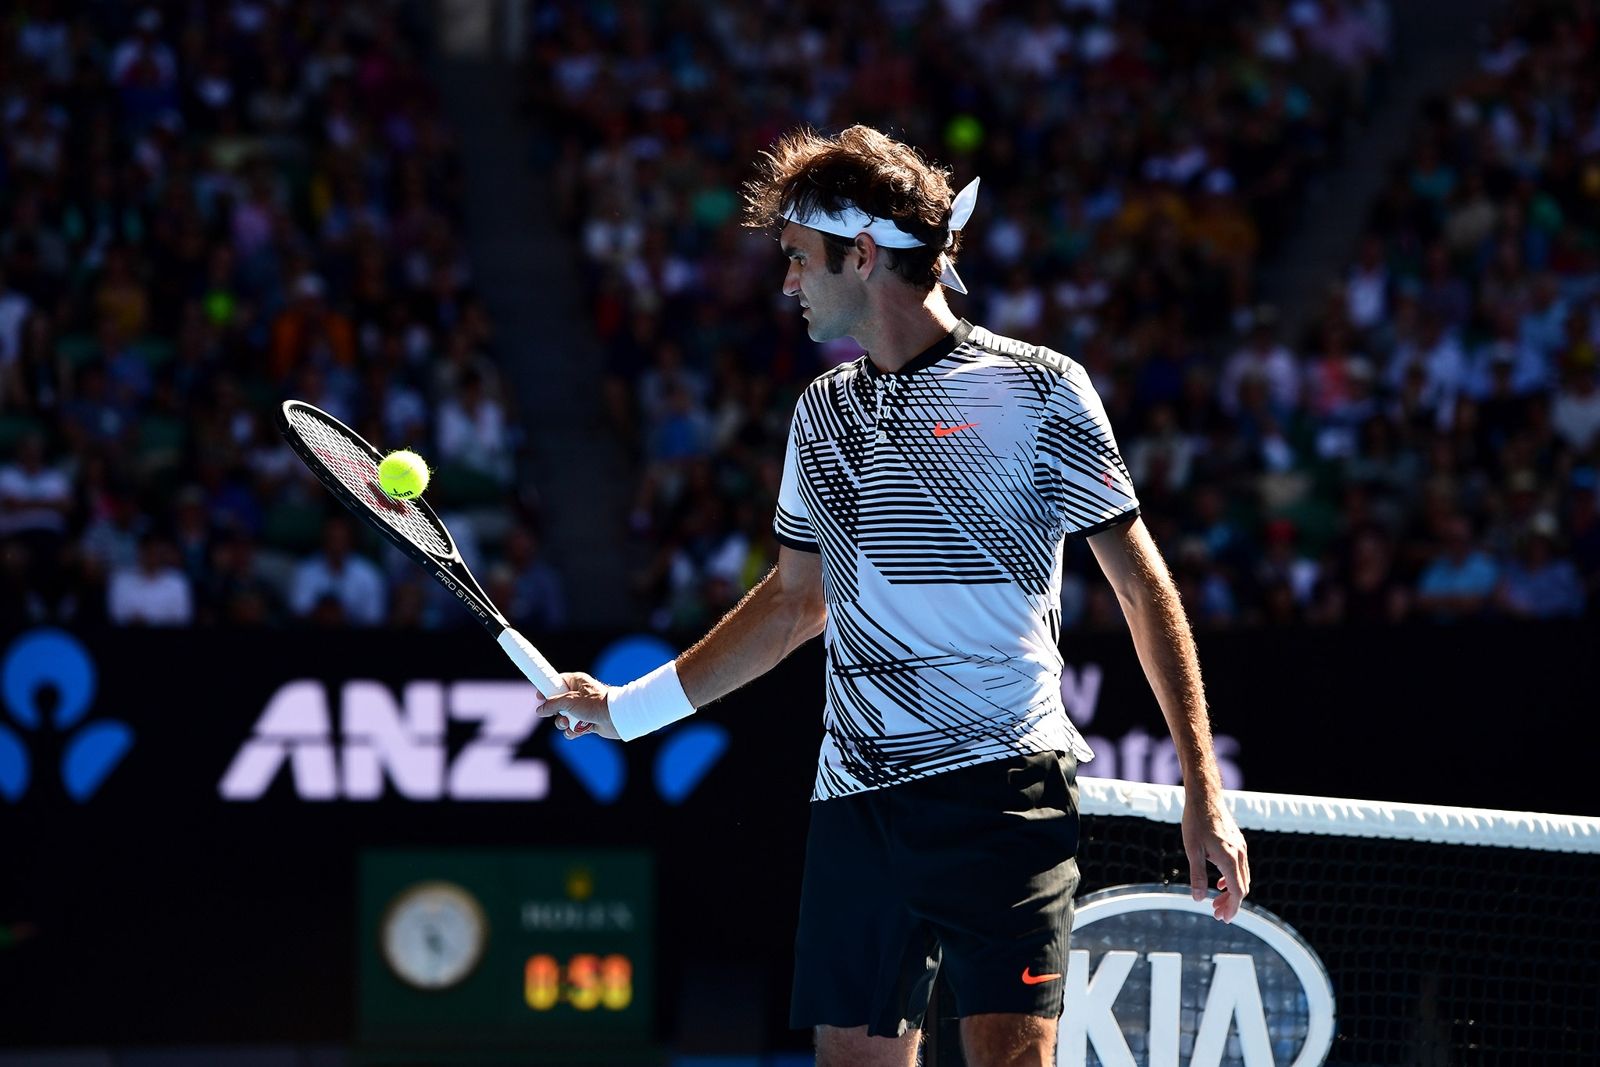 Australian Open Tennis / Roger Federer v Noah Rubin highlights on AO Radio